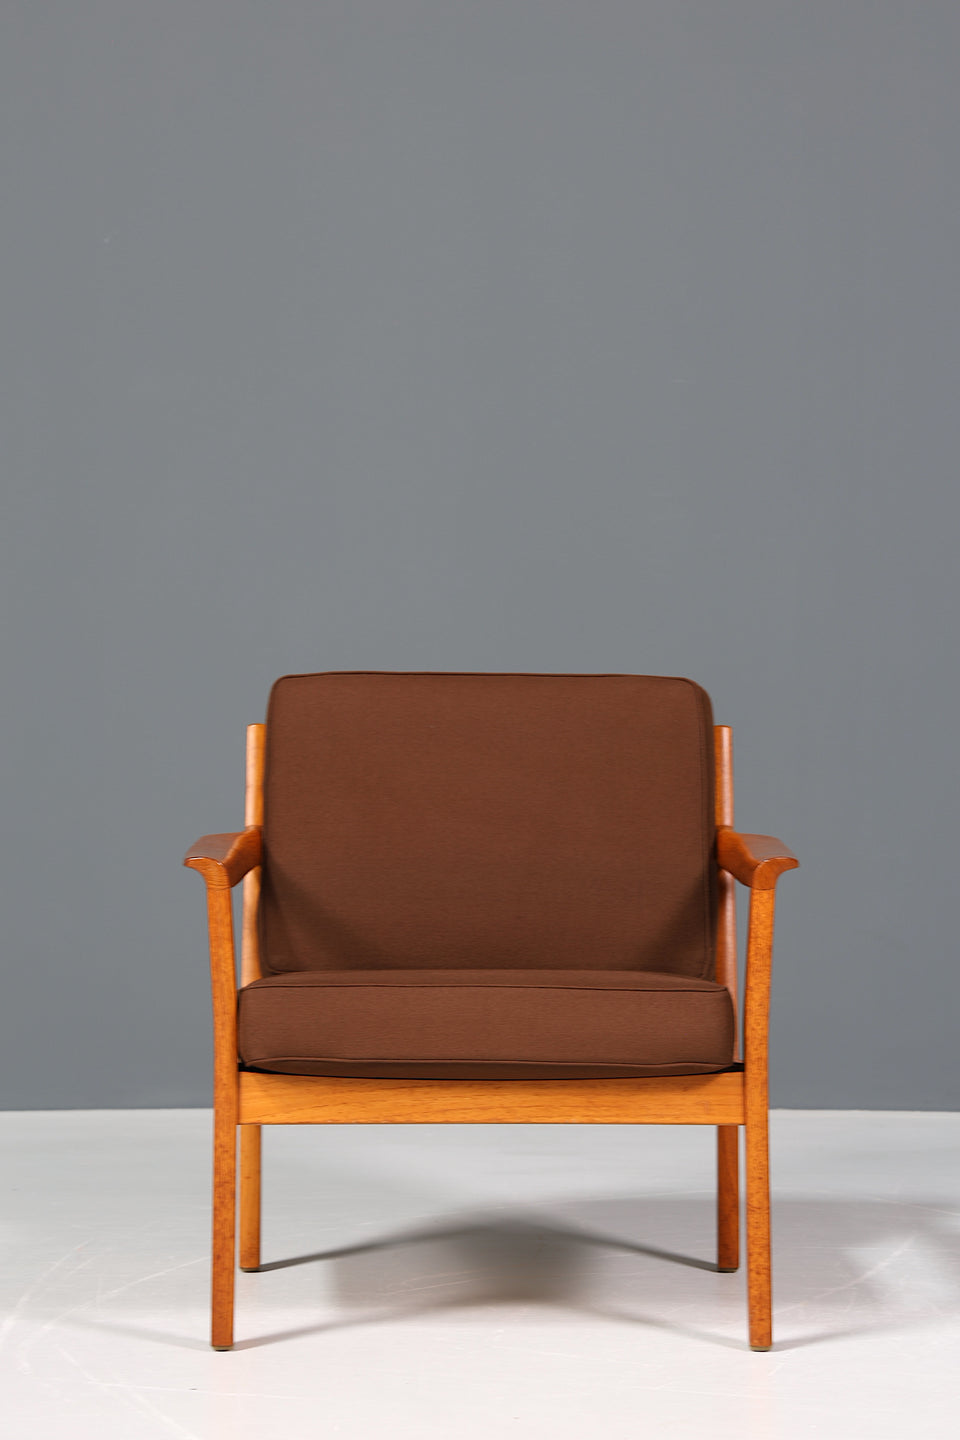 Wunderschöner Mid Century Sessel "Made in Denmark" Teak Holz Armlehnsessel 60s